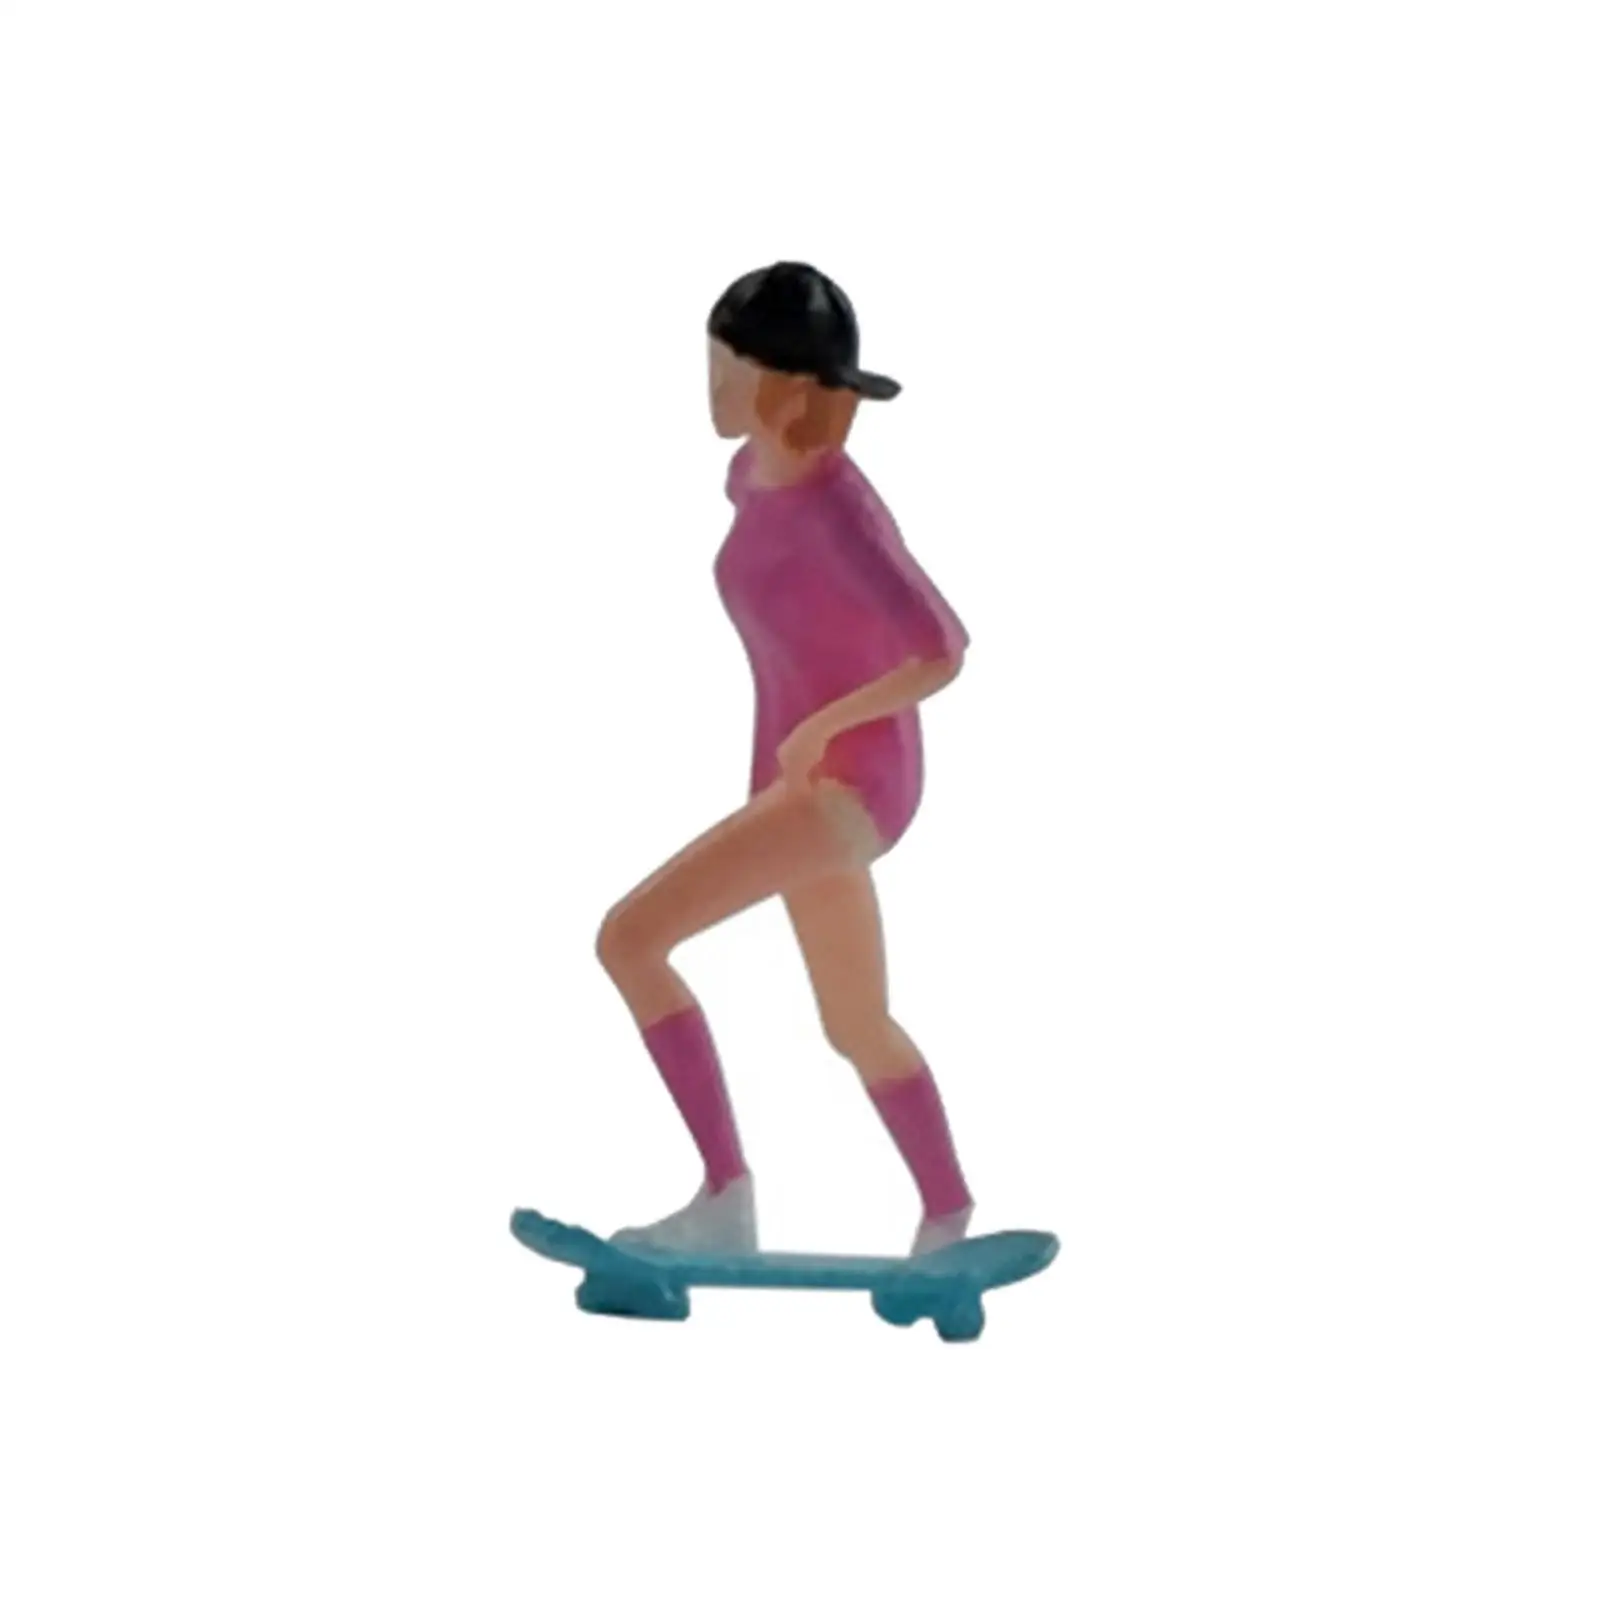 1:64 Figure Skateboard Girl Mini People Model for Model Train DIY Projects Layout